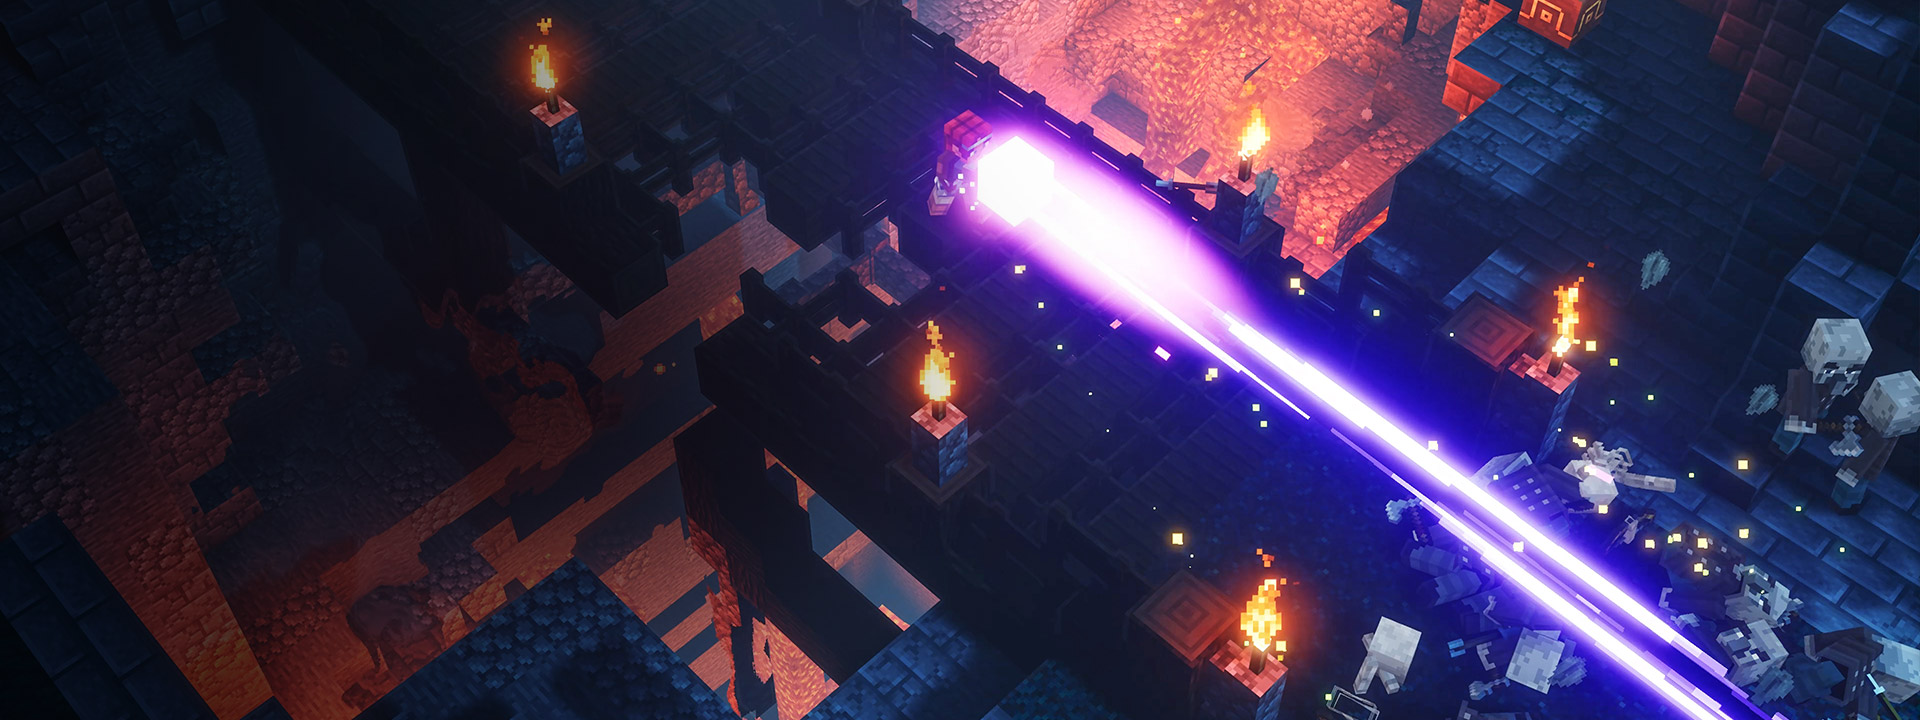 Personaje principal destruyendo enemigos disparando un rayo de plasma fuera de una caja